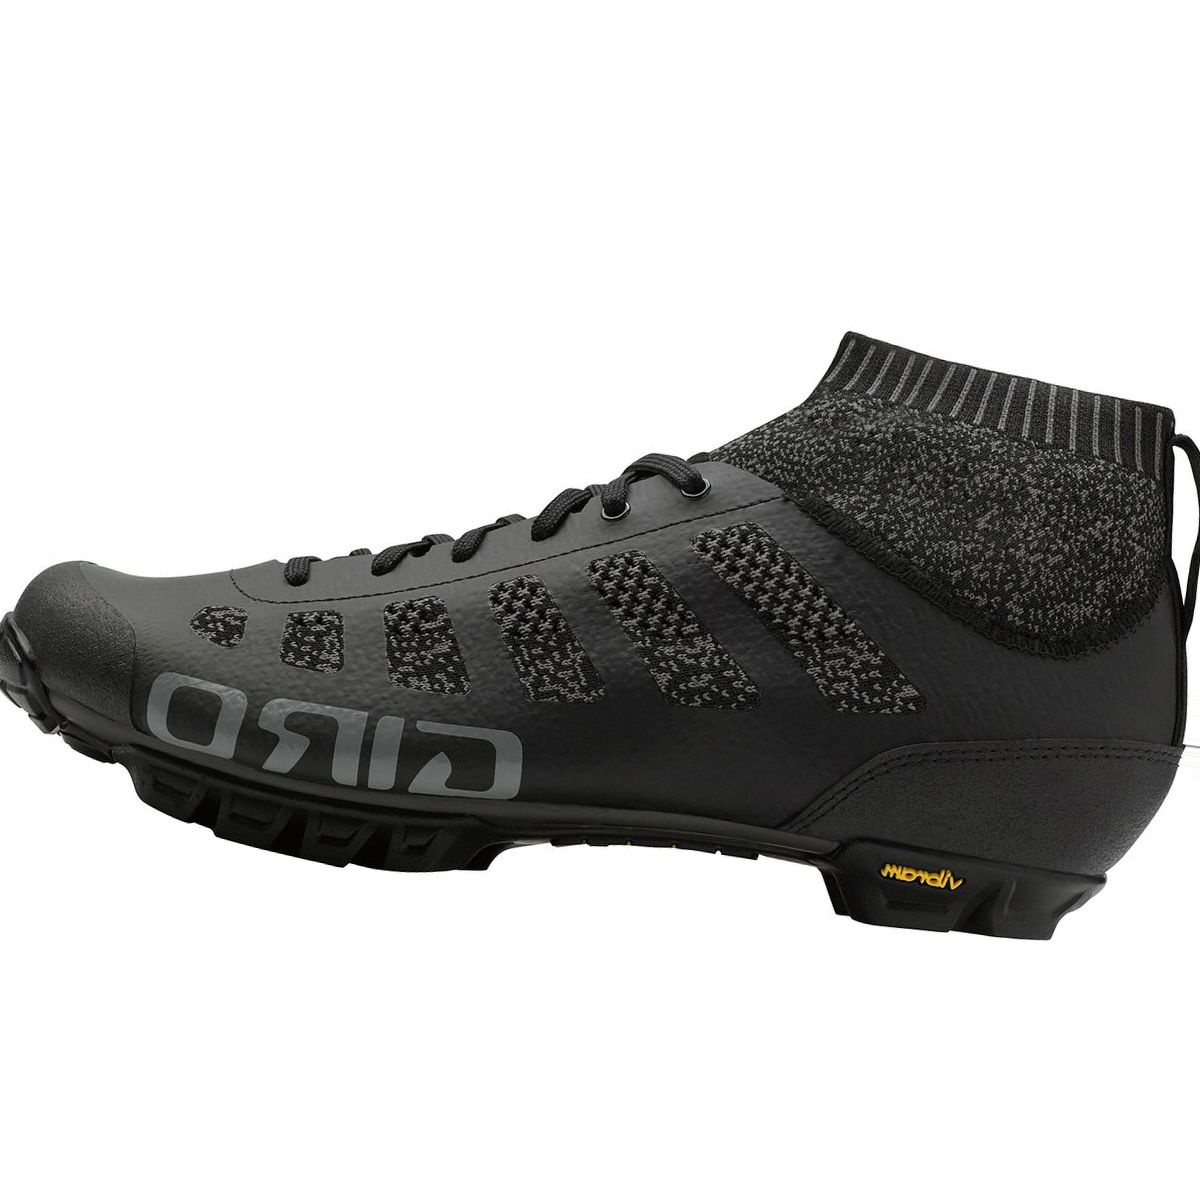 Giro Empire VR70 Knit Cycling Shoe - Men's